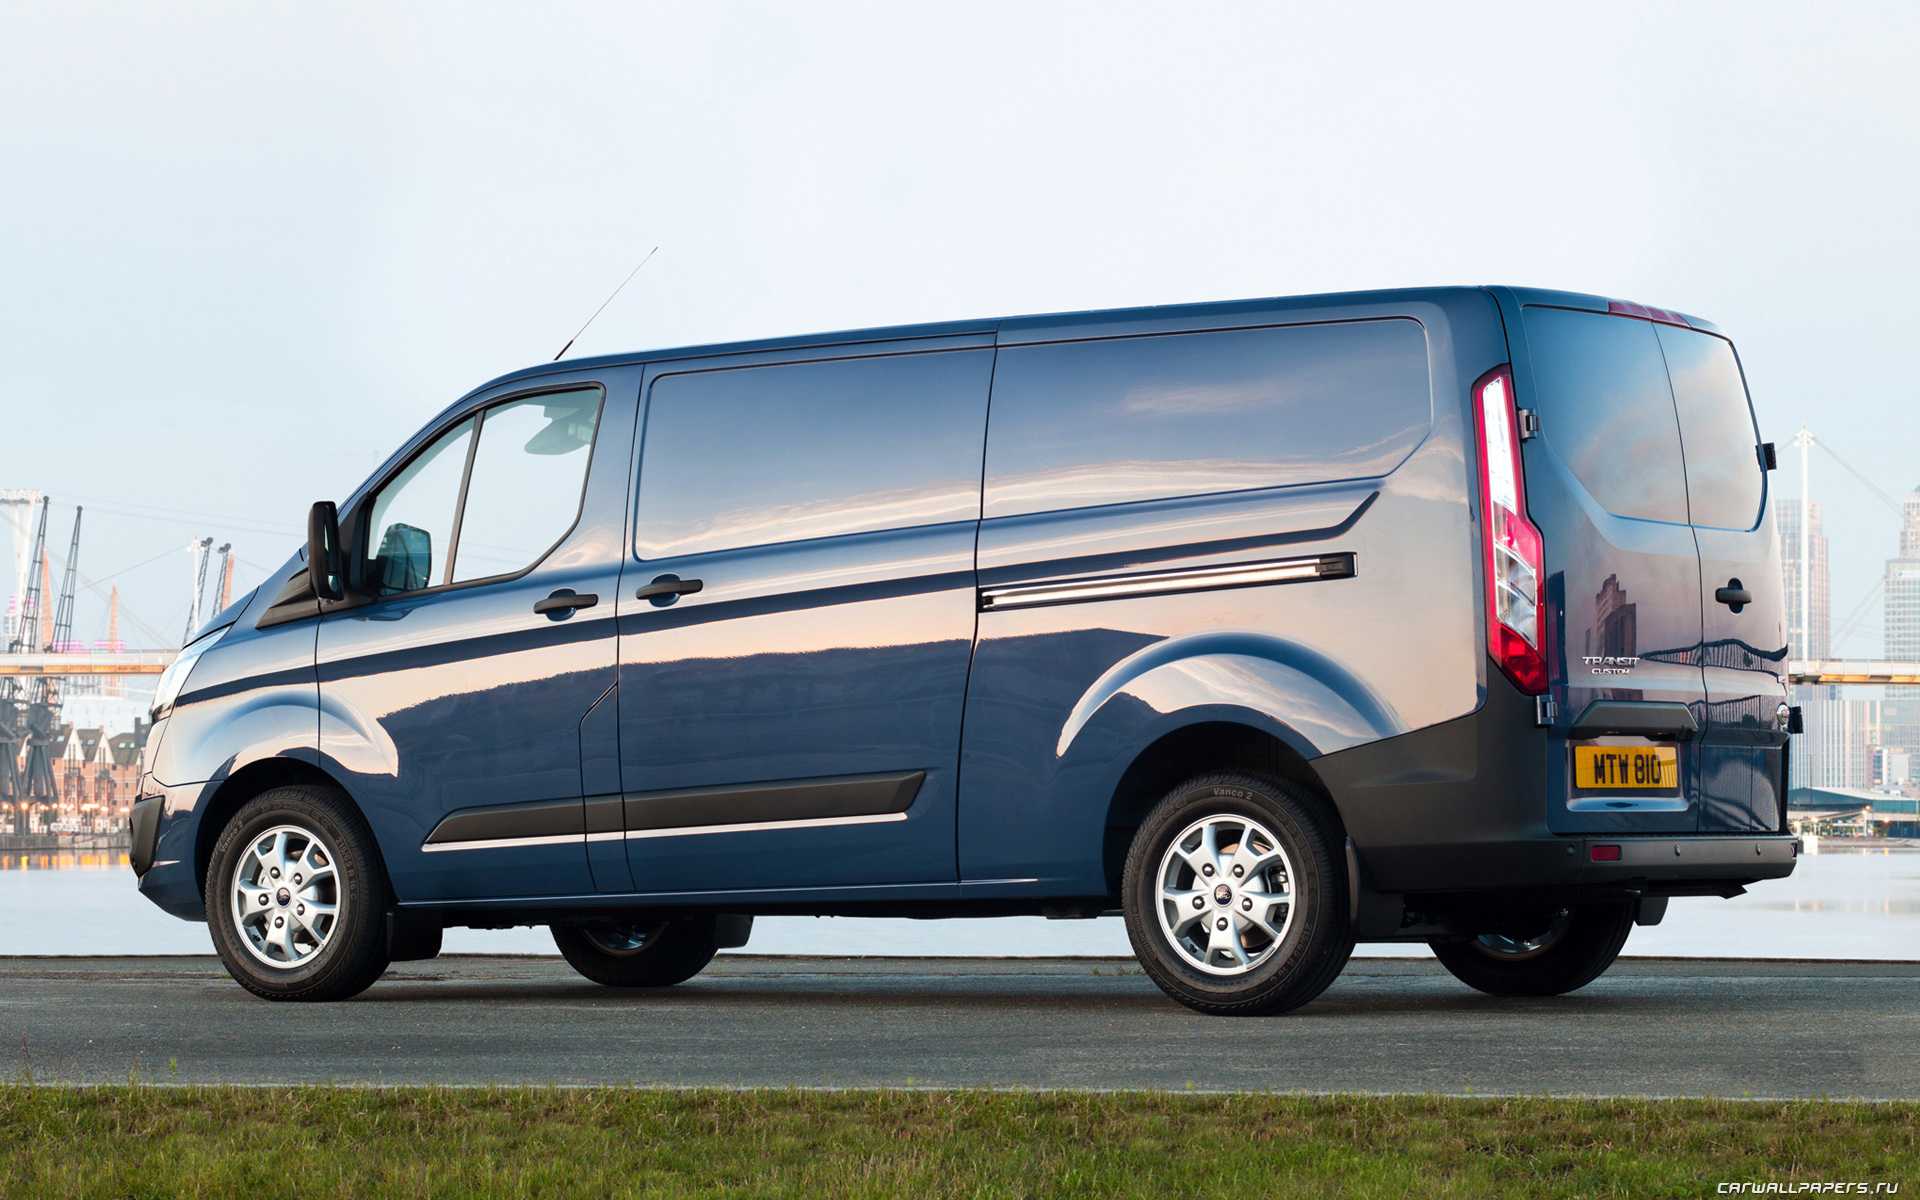 Фургоны ford transit custom и ford transit - надежность на дорогах и идеальная практичность